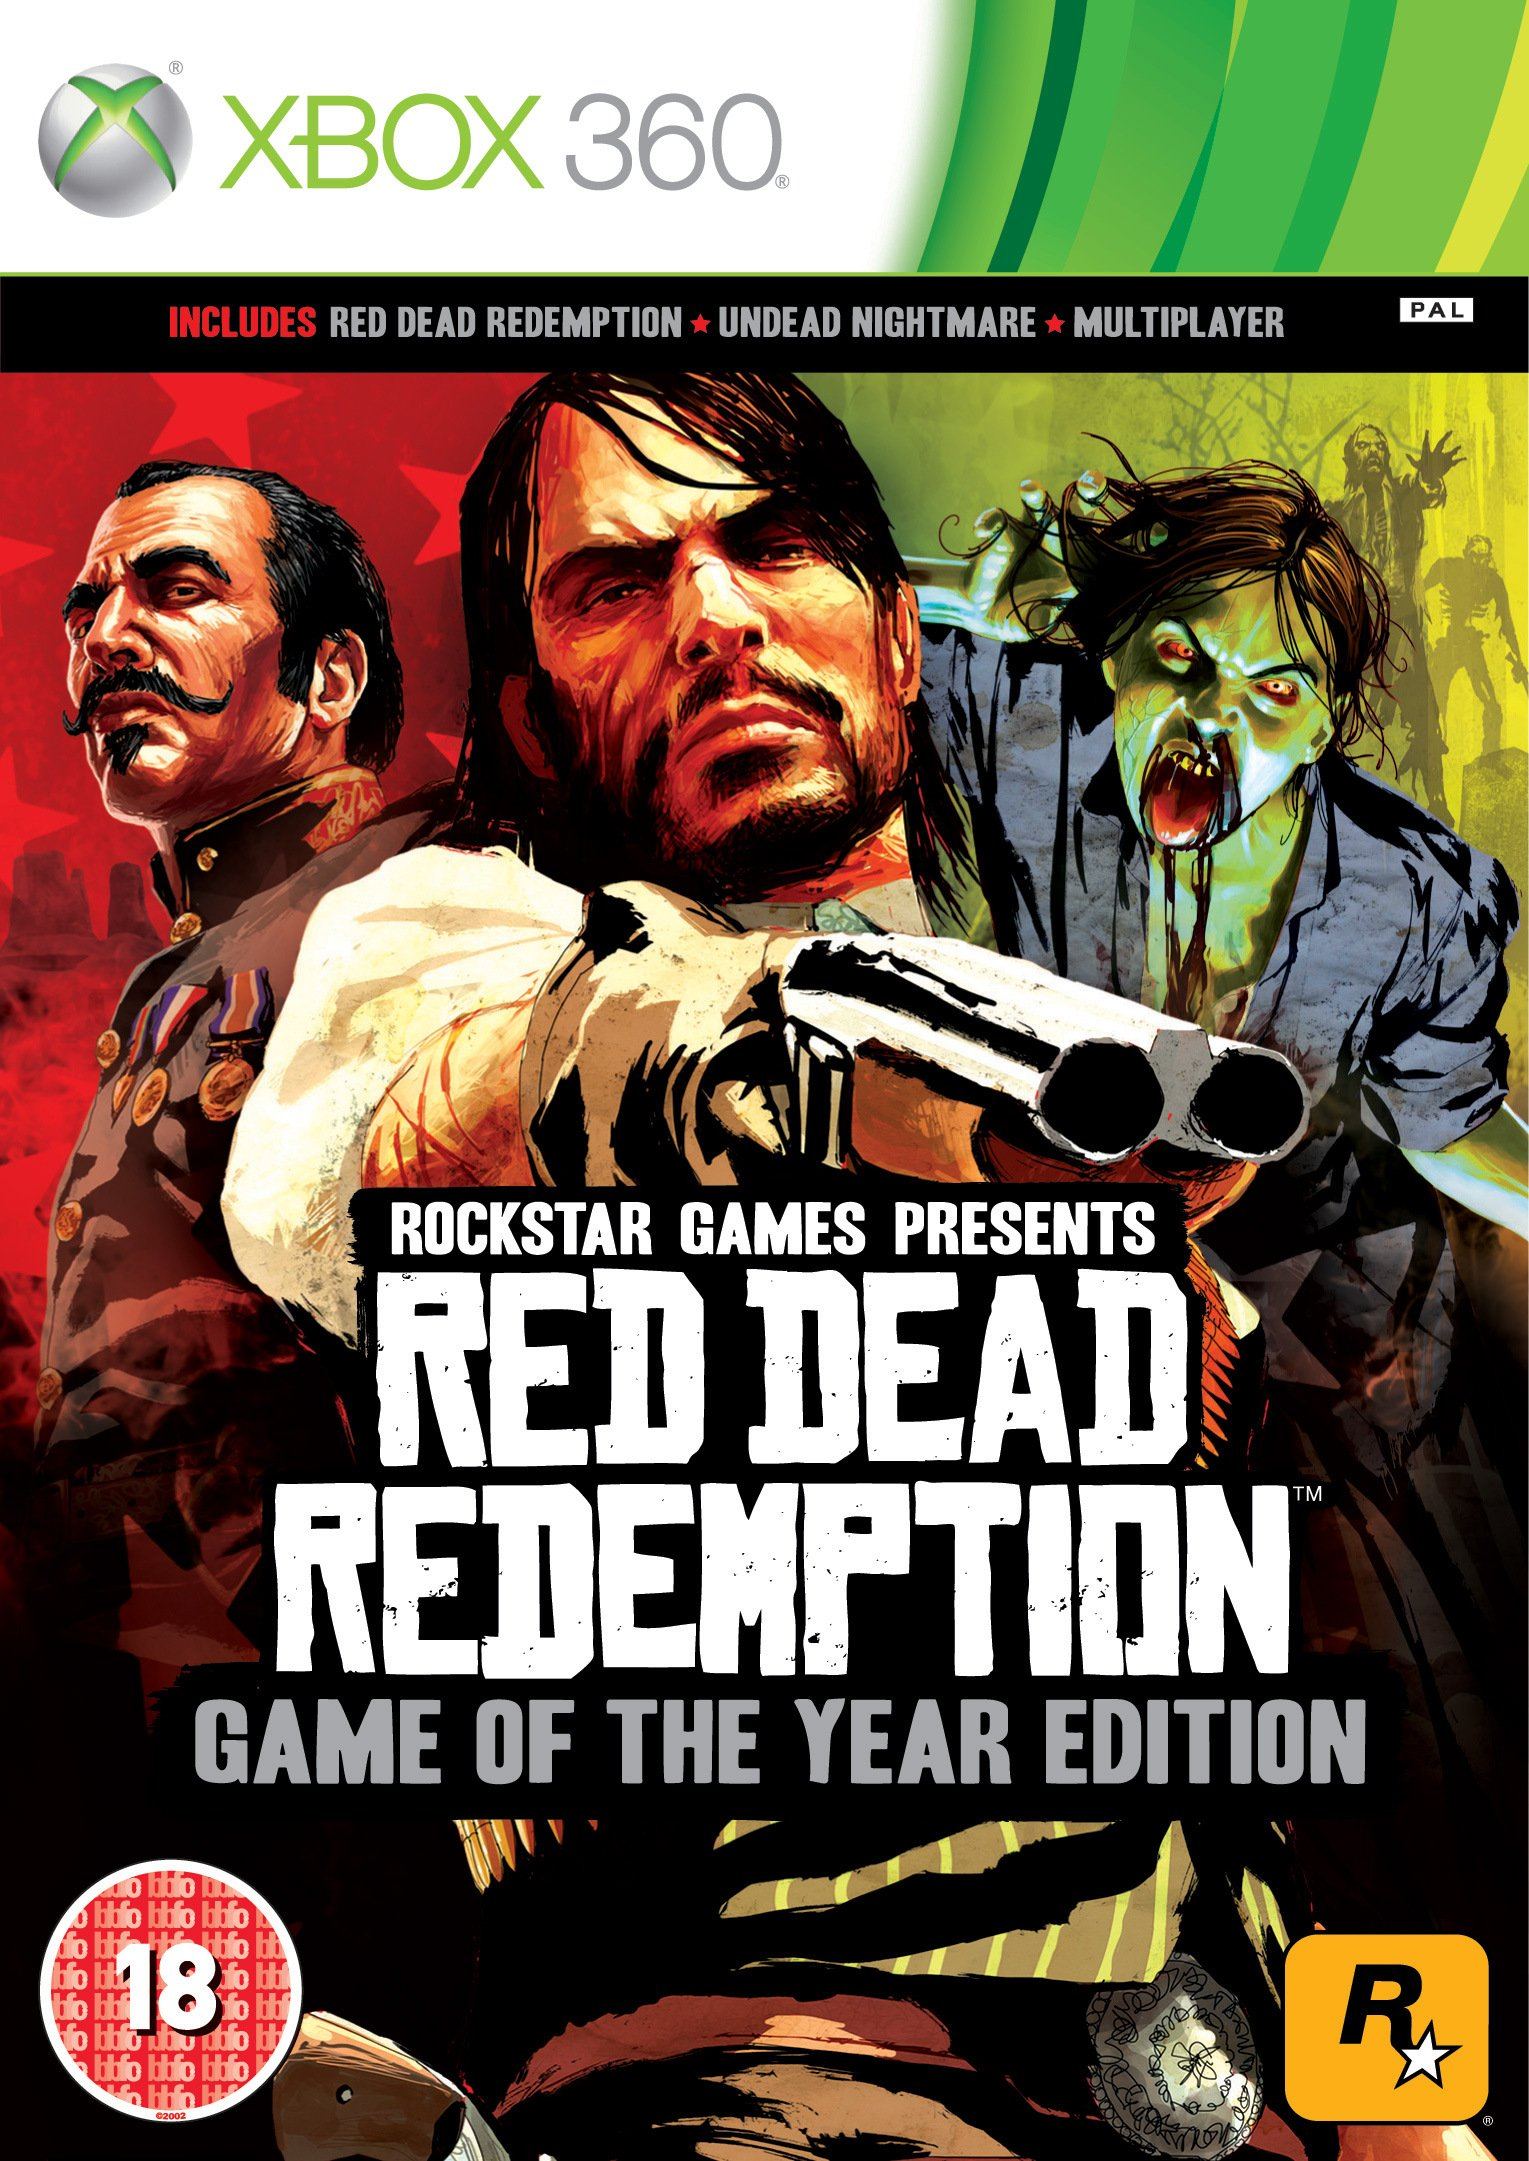  PS4 - Red Dead Redemption 2 - [PAL DE] : Video Games